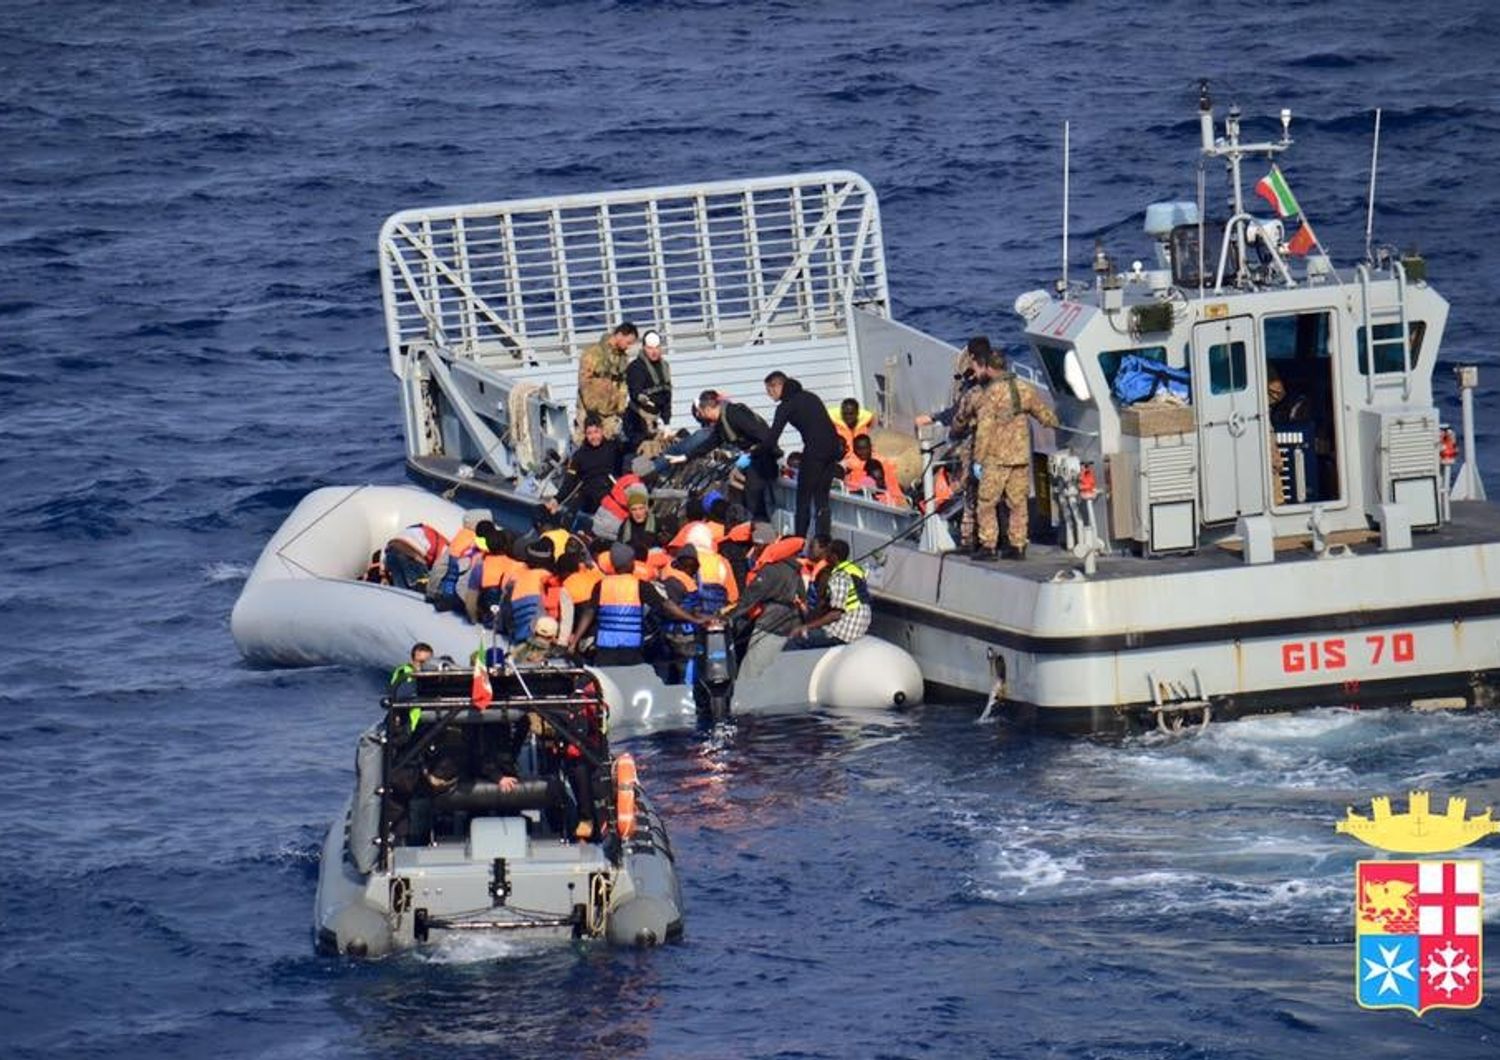 Salvataggio di migranti in mare